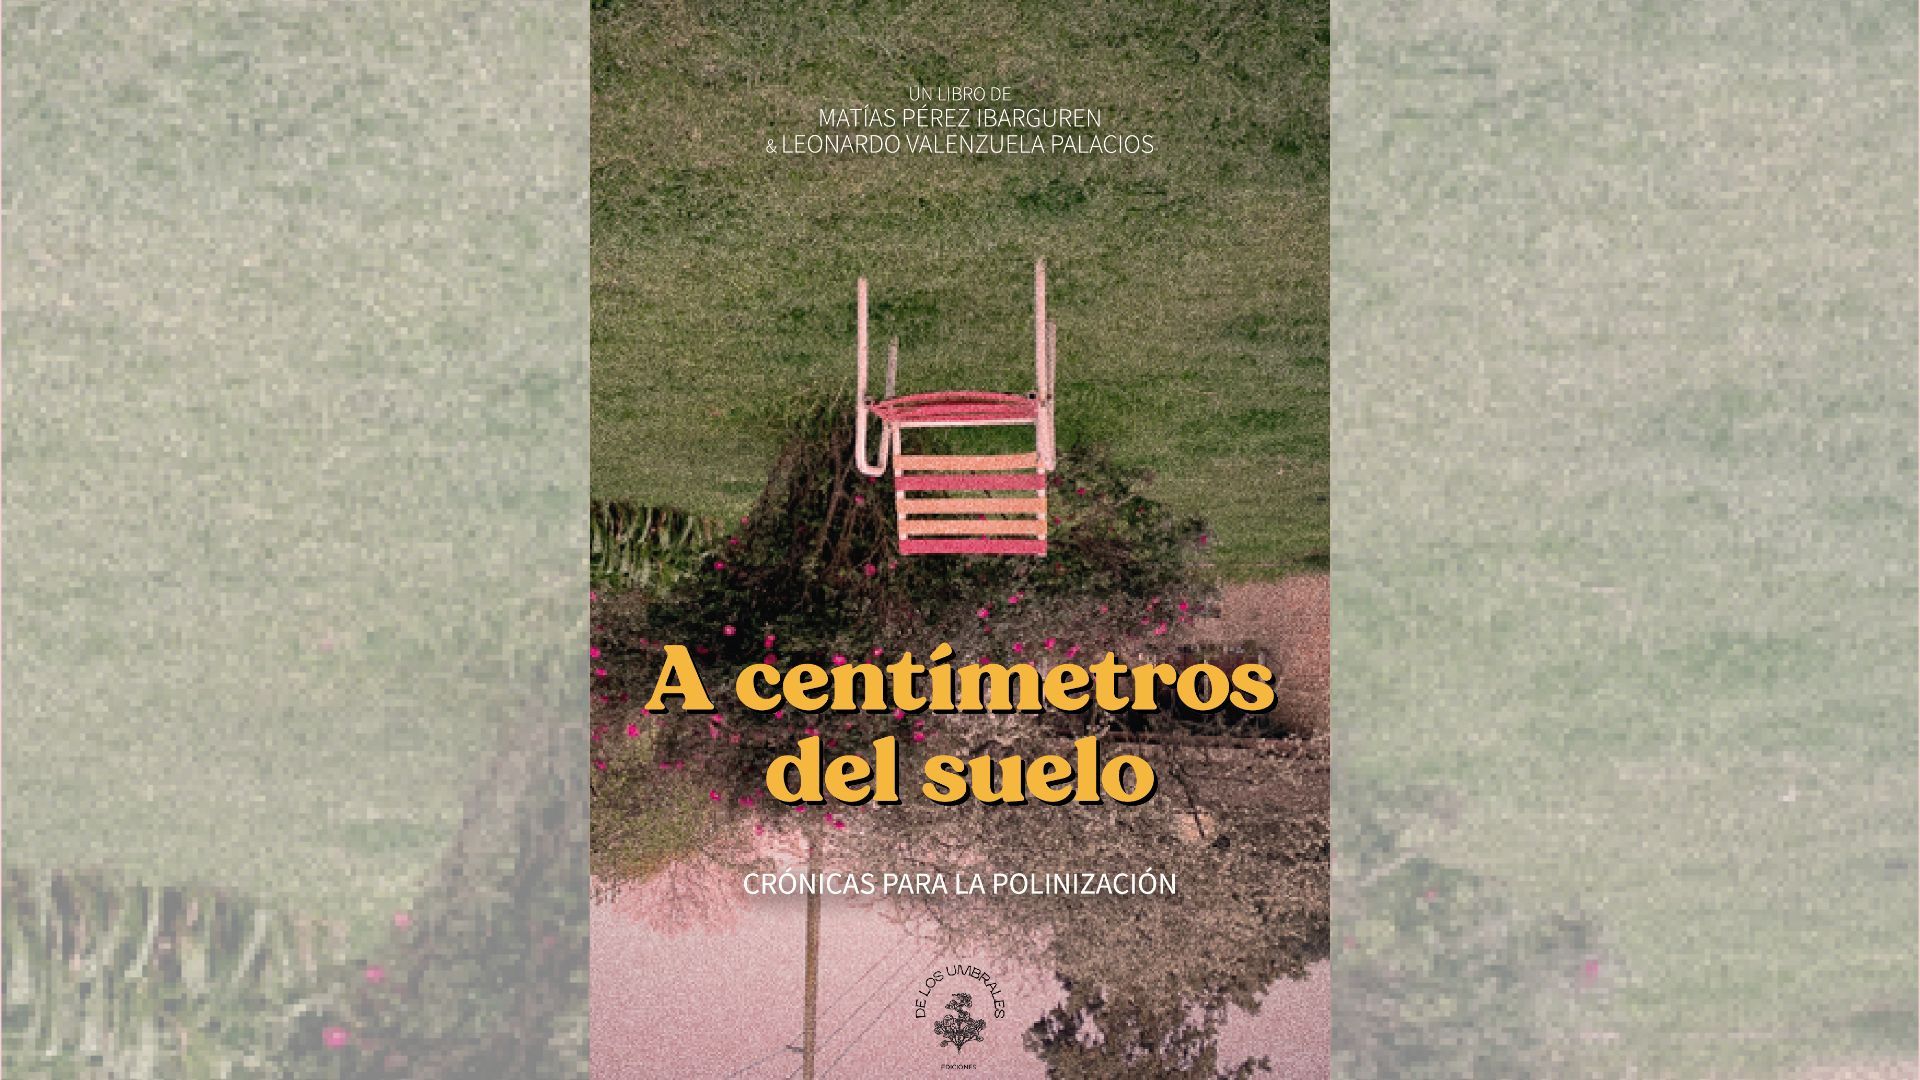 La poética de la naturaleza en un solo libro: Leo Valenzuela y Matías Pérez lanzan la segunda edición de “A centímetros del suelo”